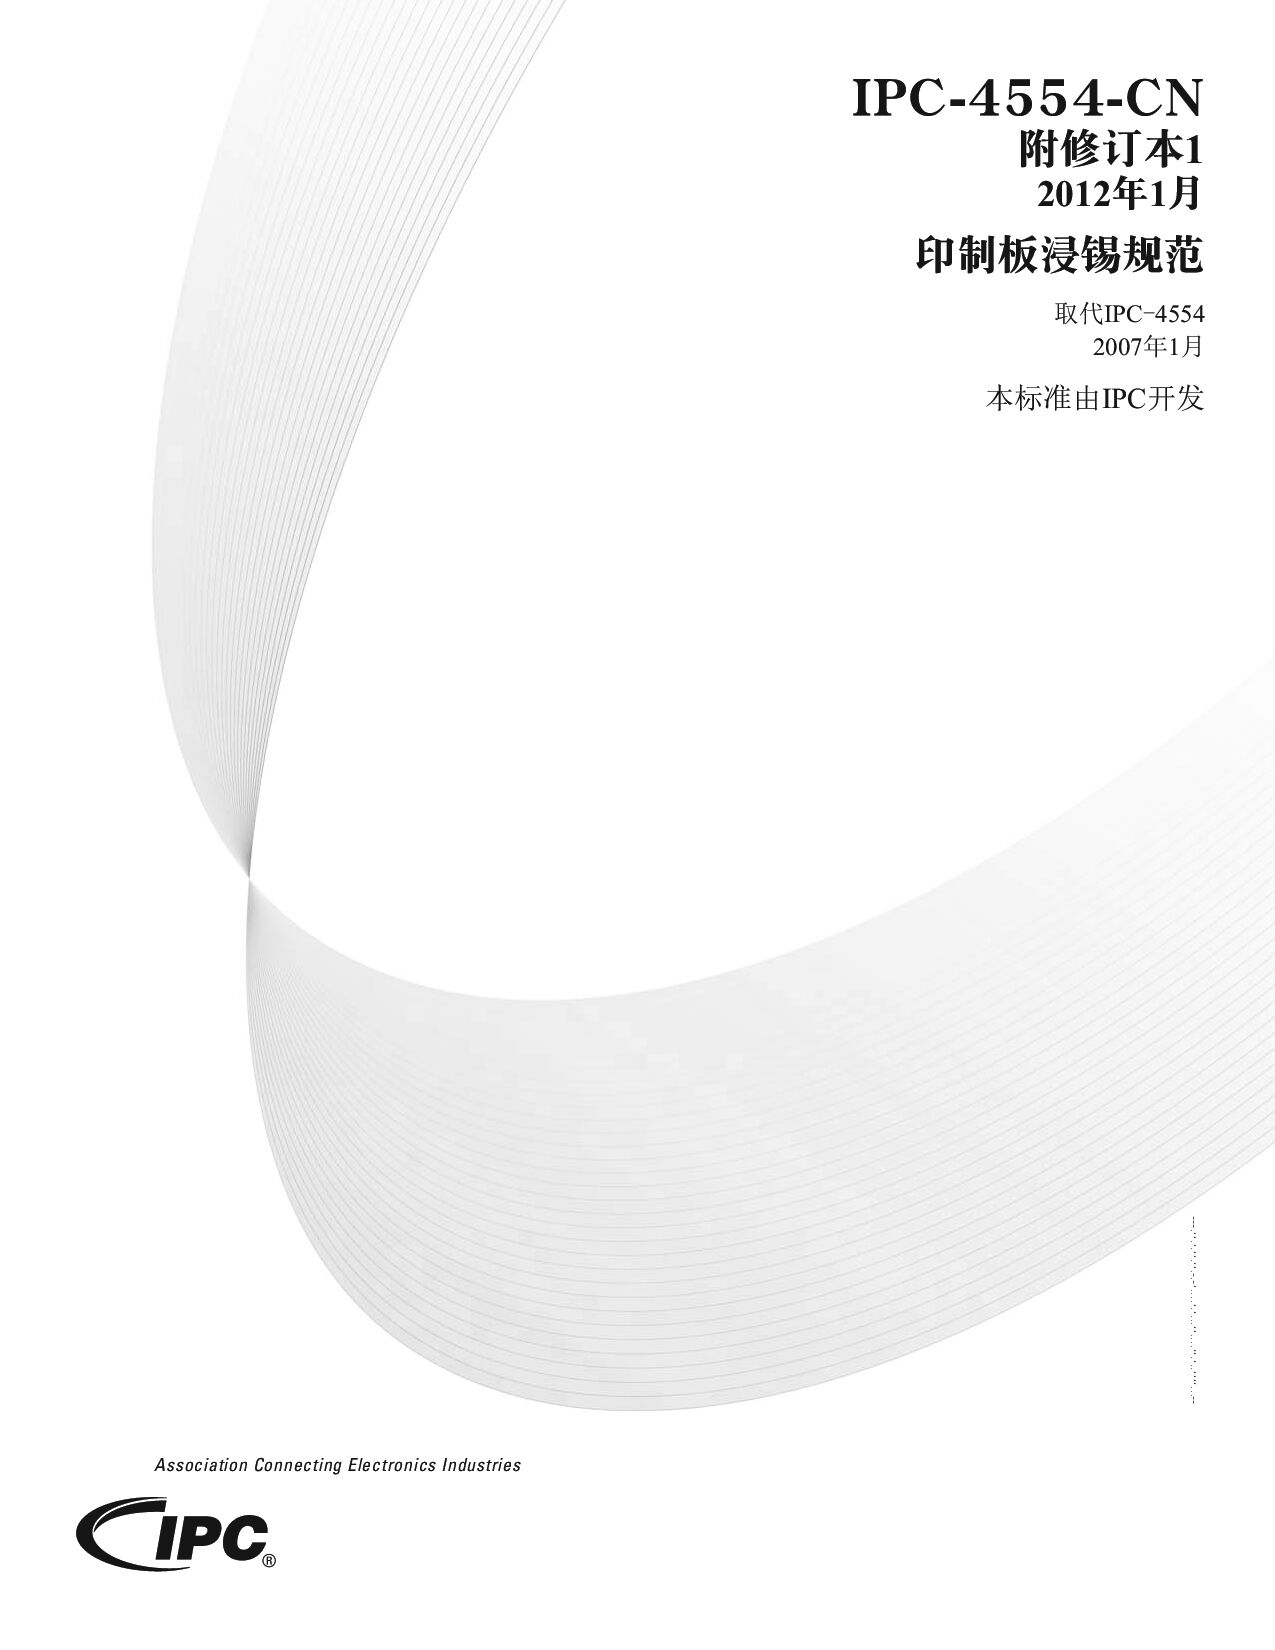 IPC 4554 CHINESE 2007(2012)封面图